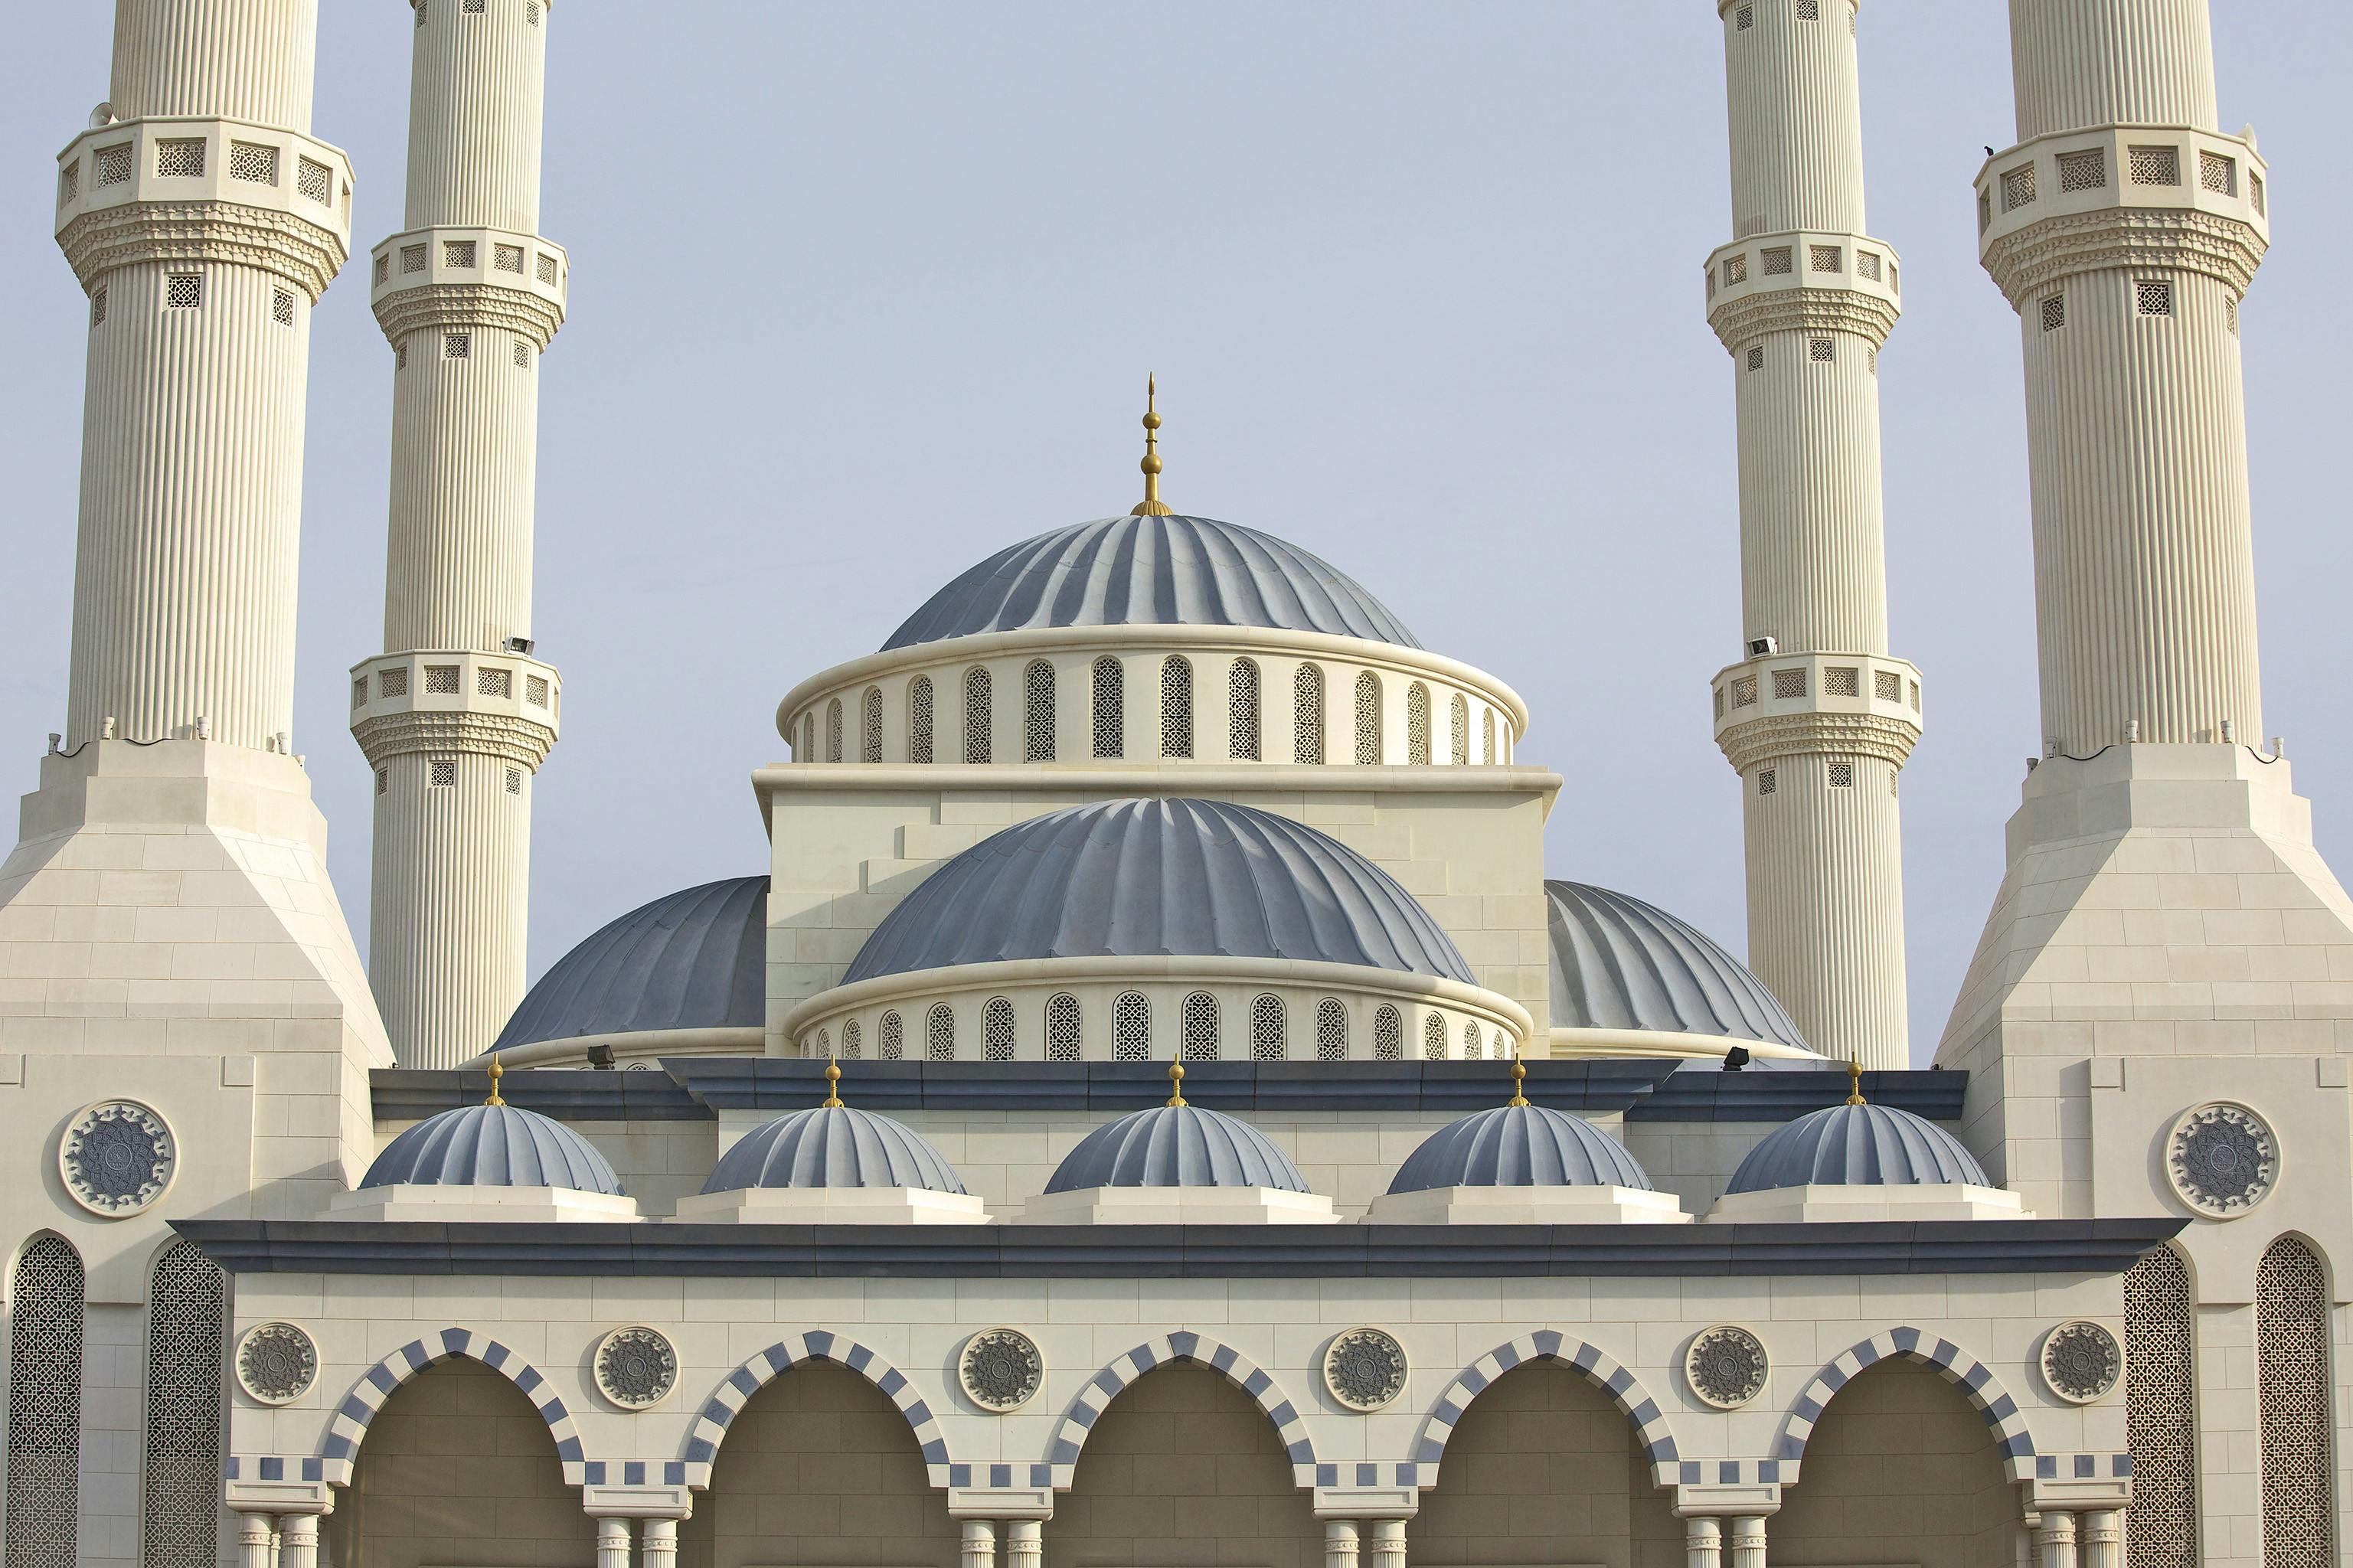 al-farooq-omar-ibn-al-khattab-mosque-in-dubai-united-arab-emirates-4 LR.jpg